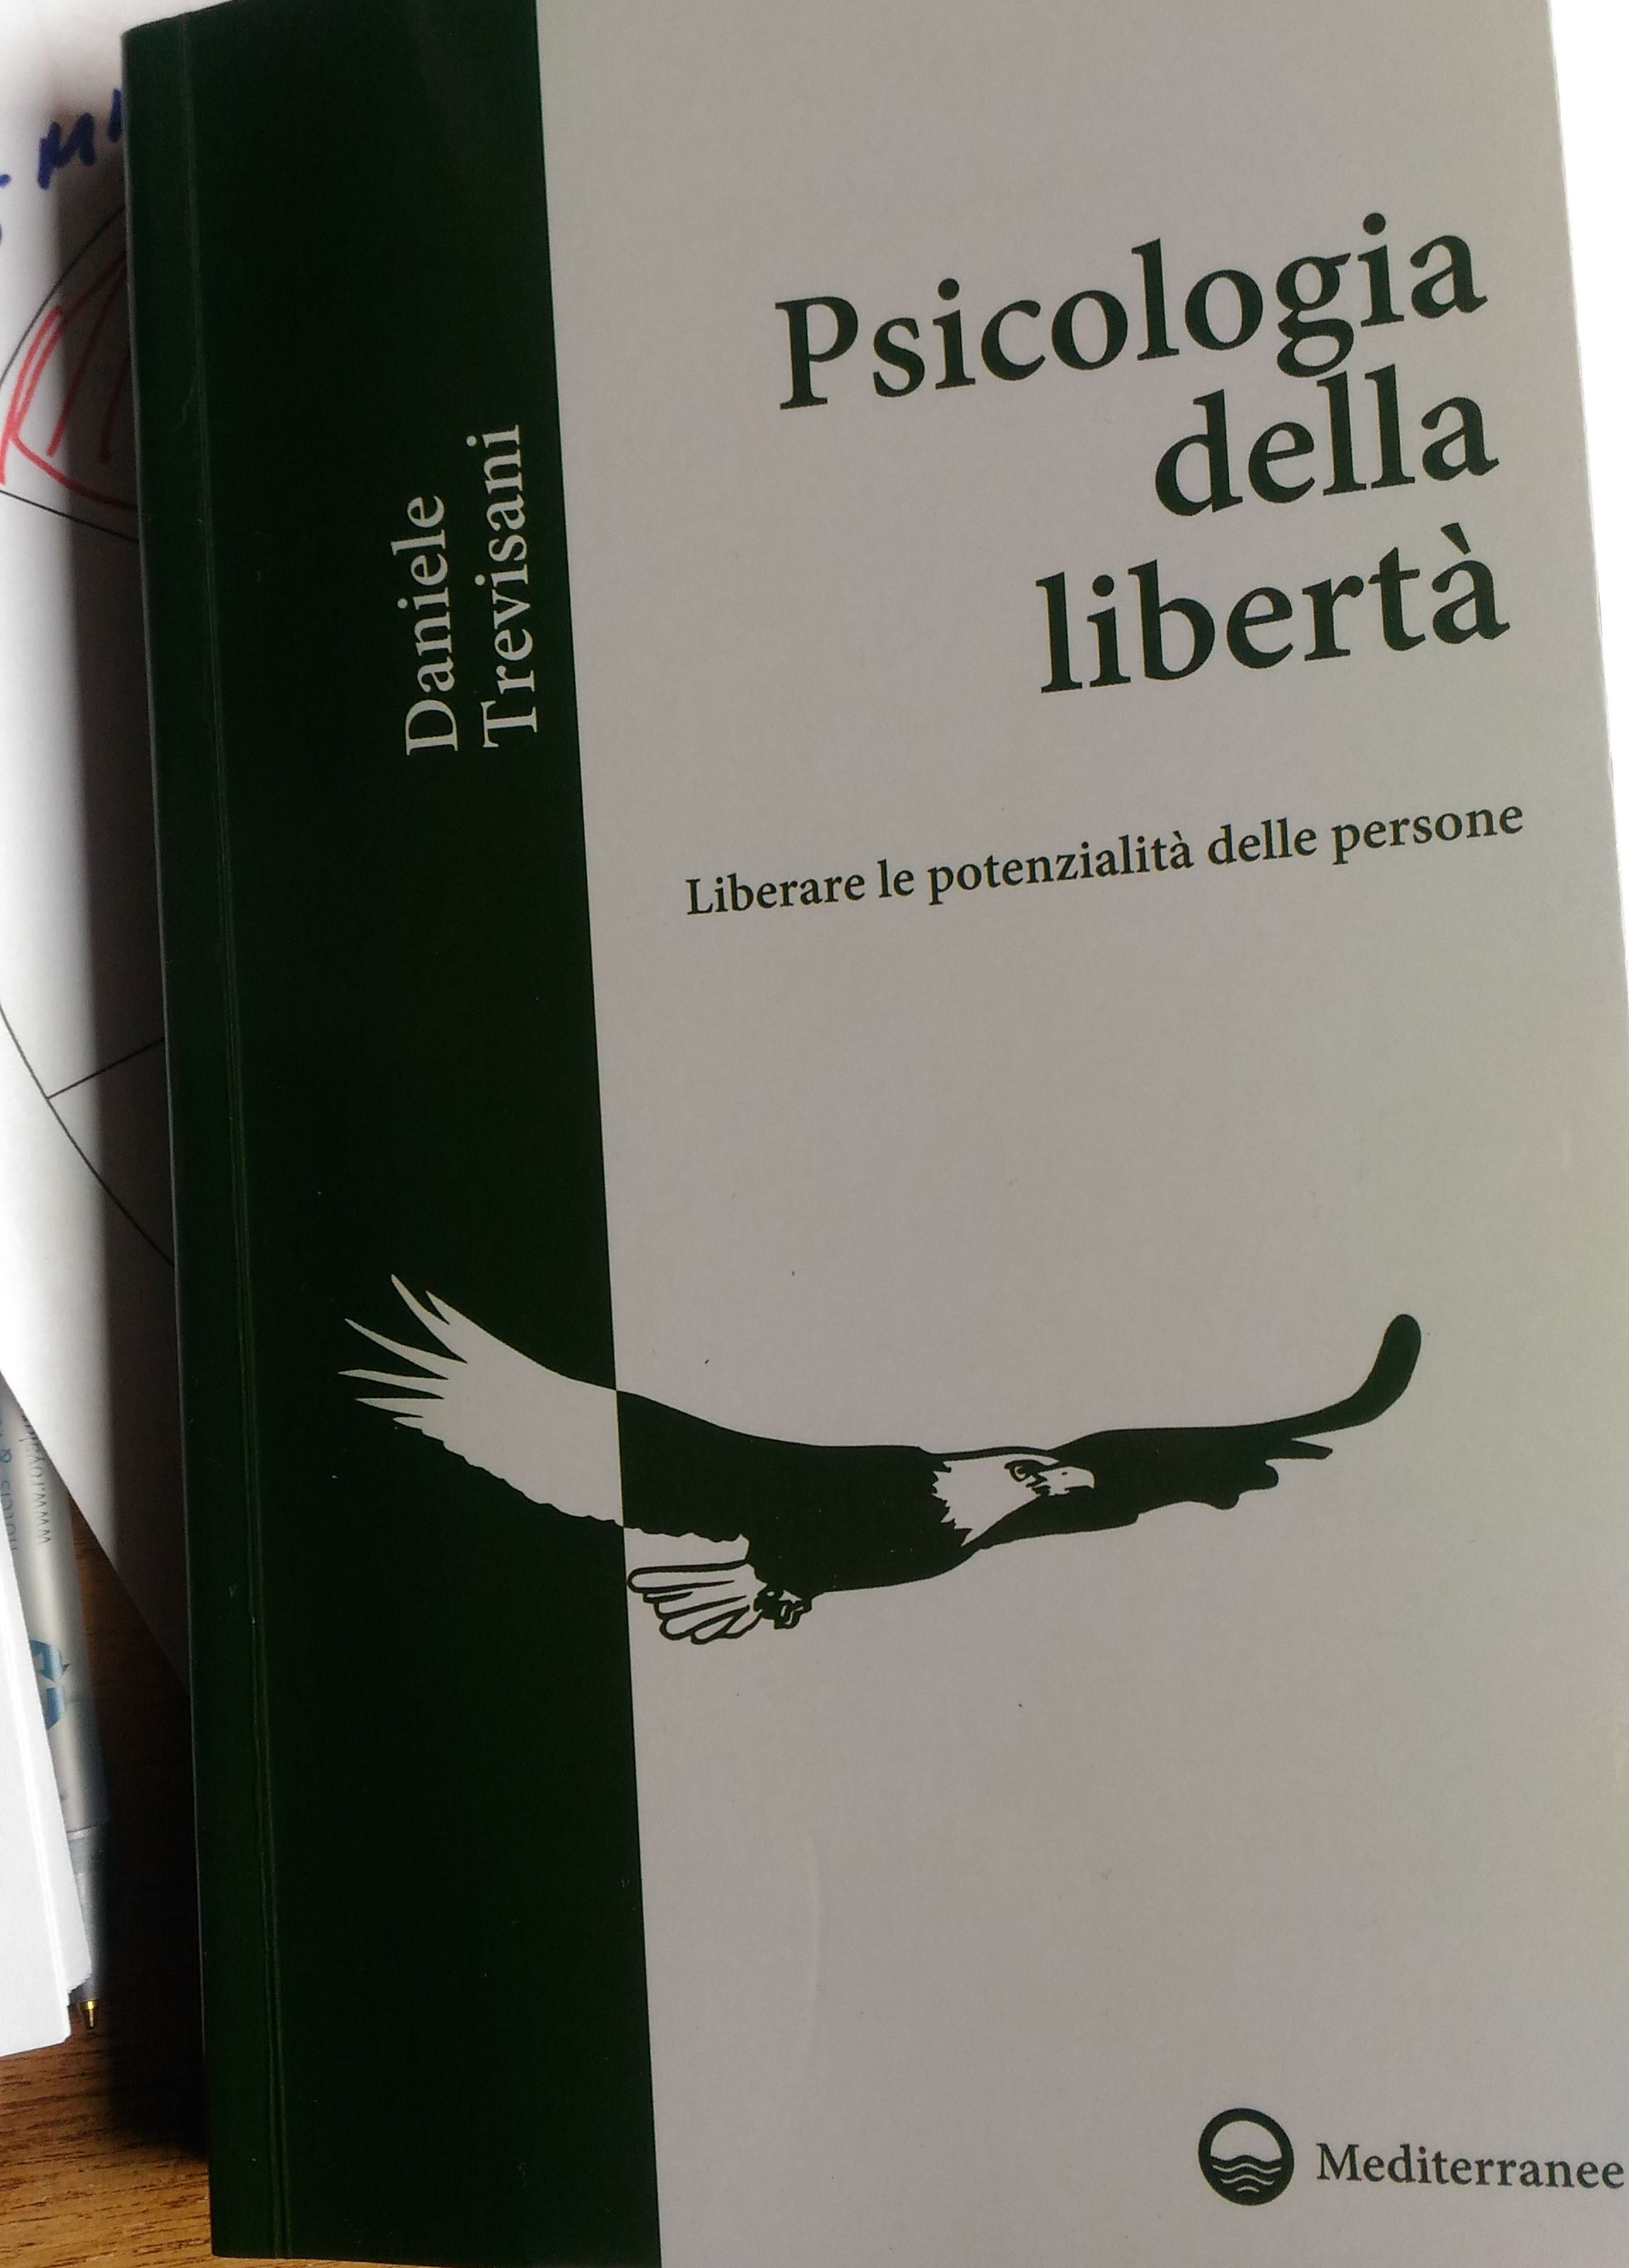 cpertina psicologia della libertà di daniele trevisani edizioni mediterranee roma